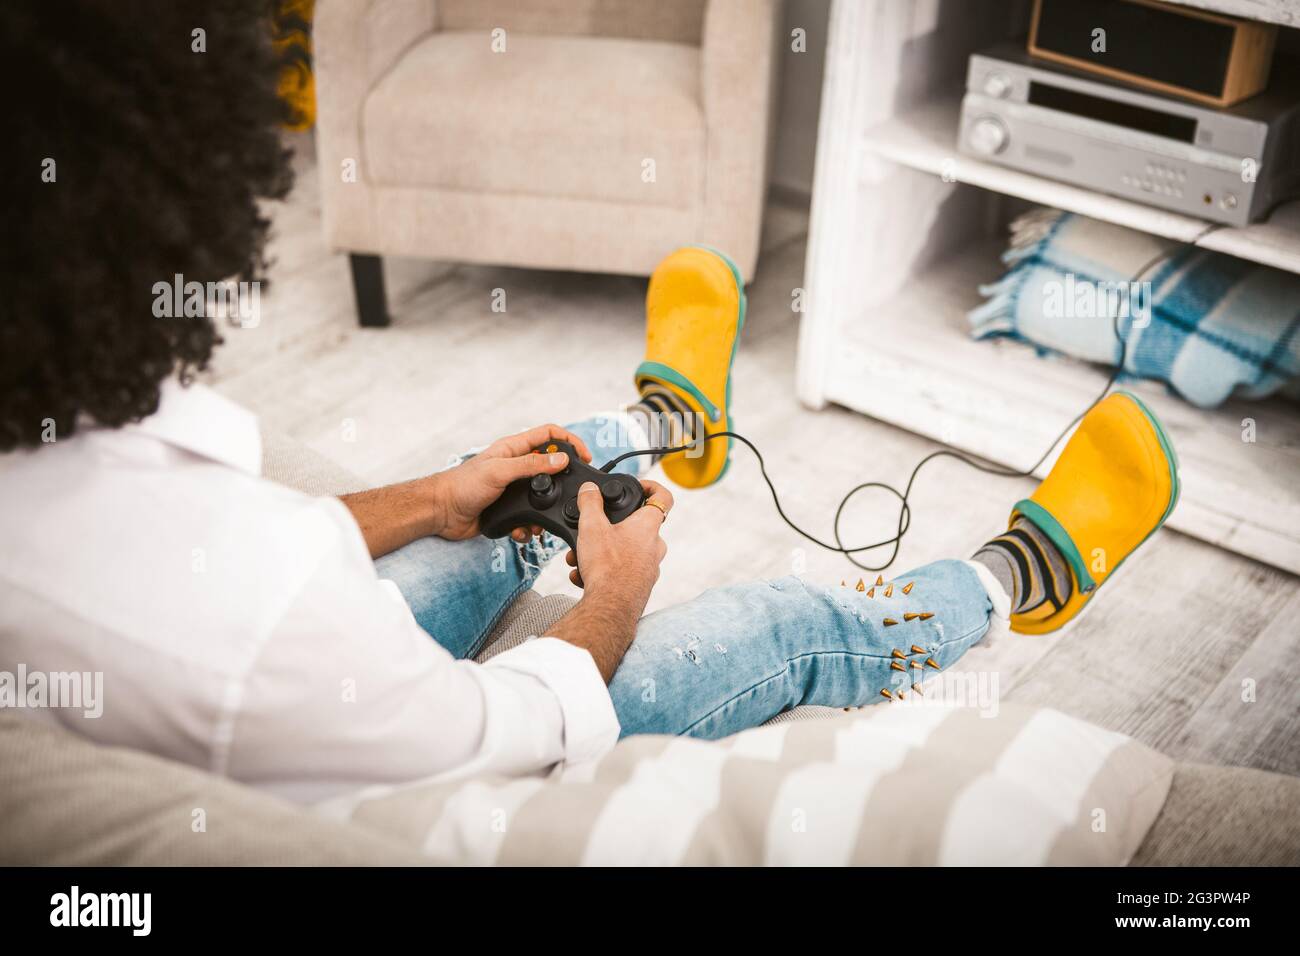 Junger Mann spielt Computerspiel. Gamer Entferne die Tasten auf dem Joystick von der PlayStation im gemütlichen Innenraum. Mann in cas Stockfoto